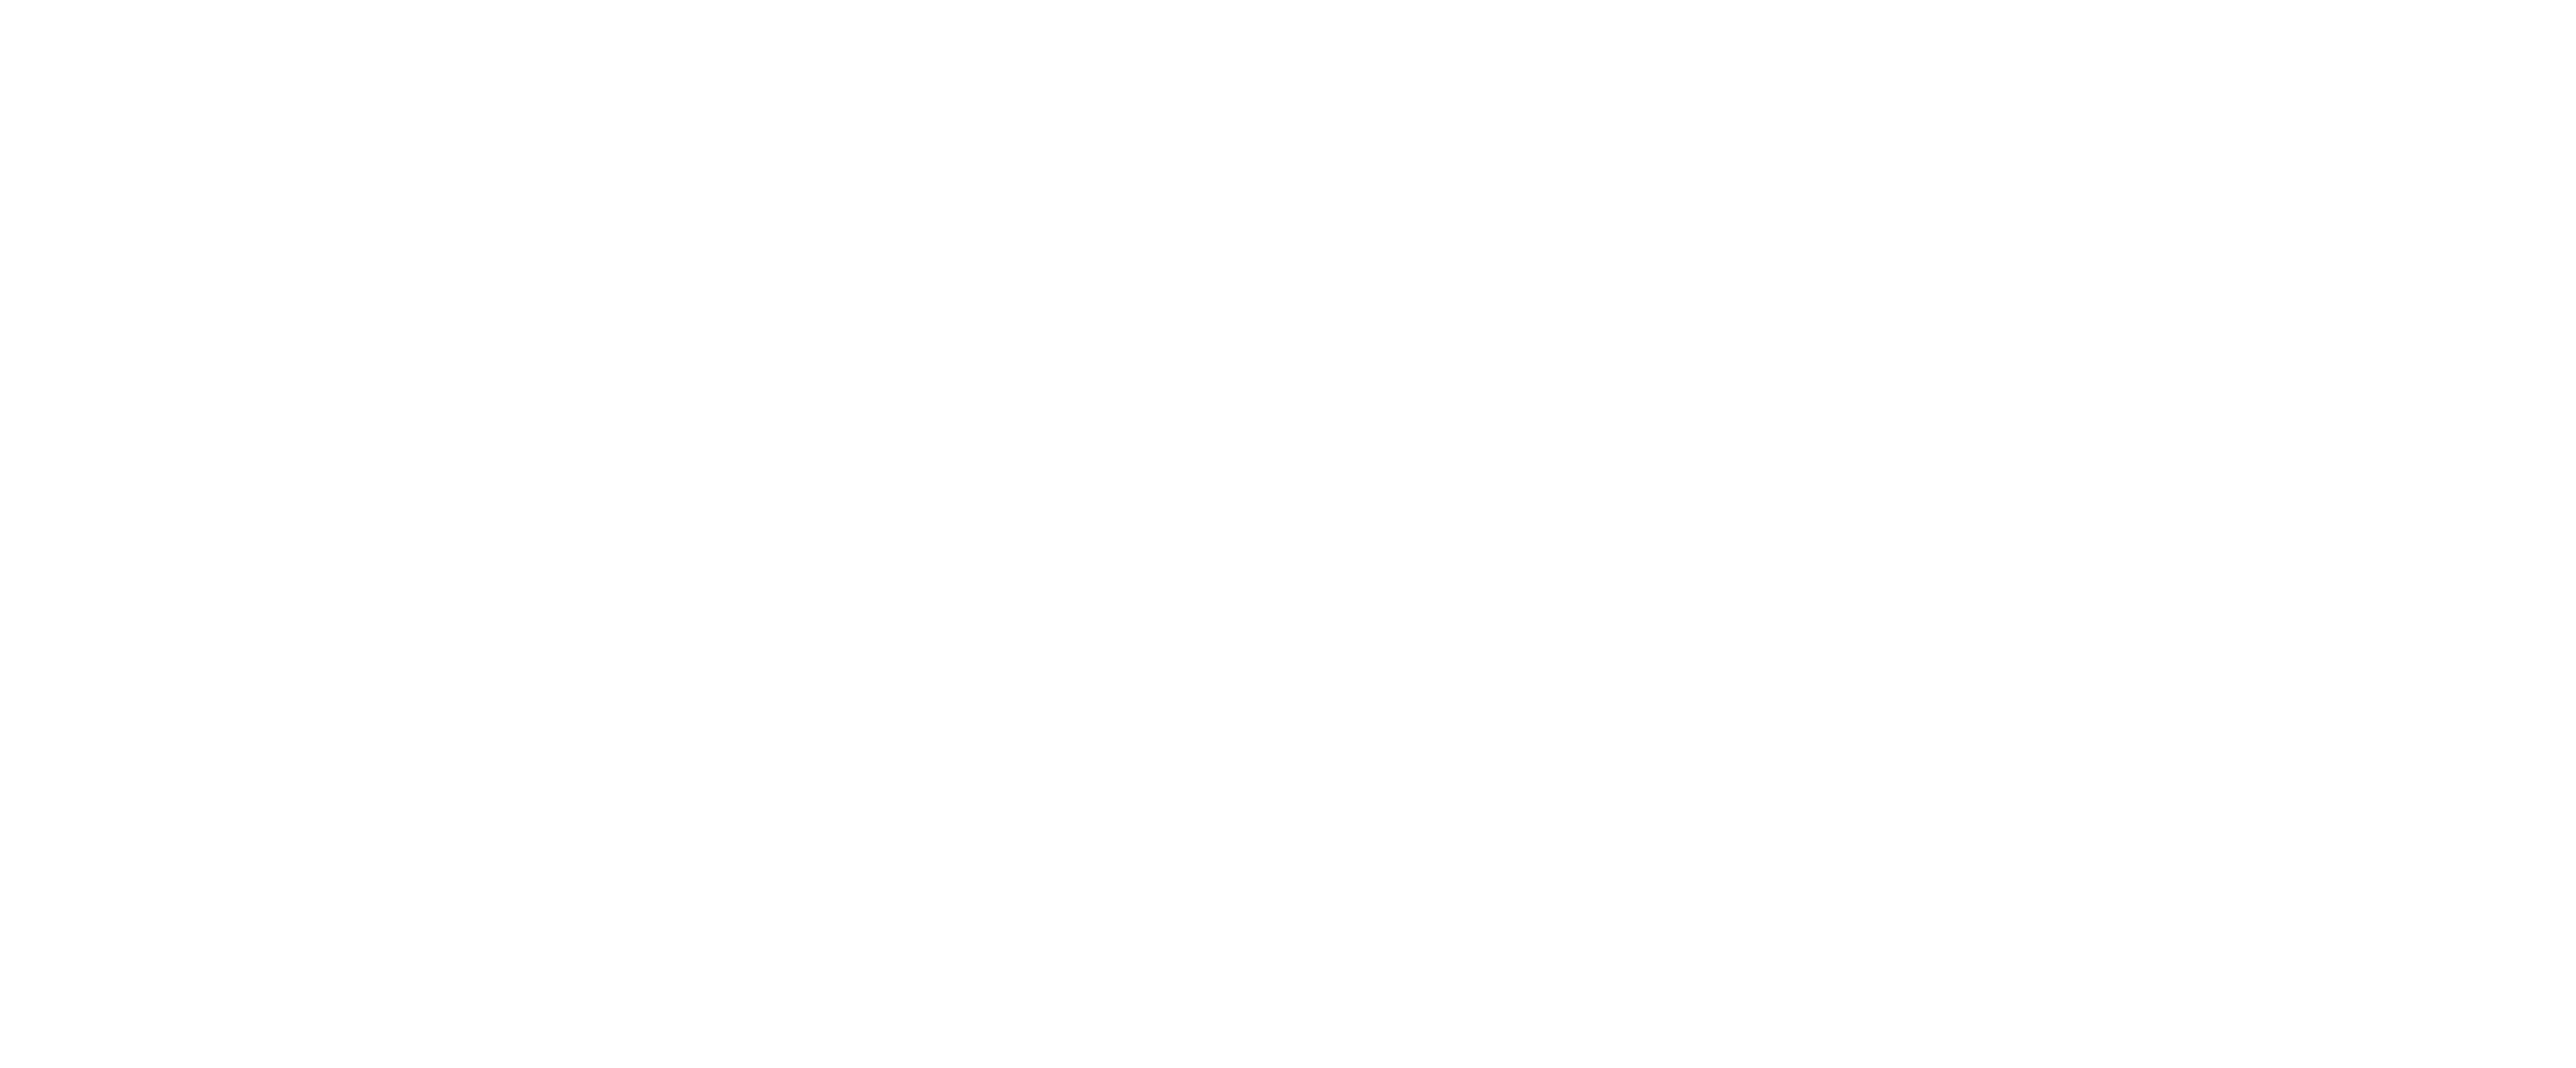 Royal Candles logo